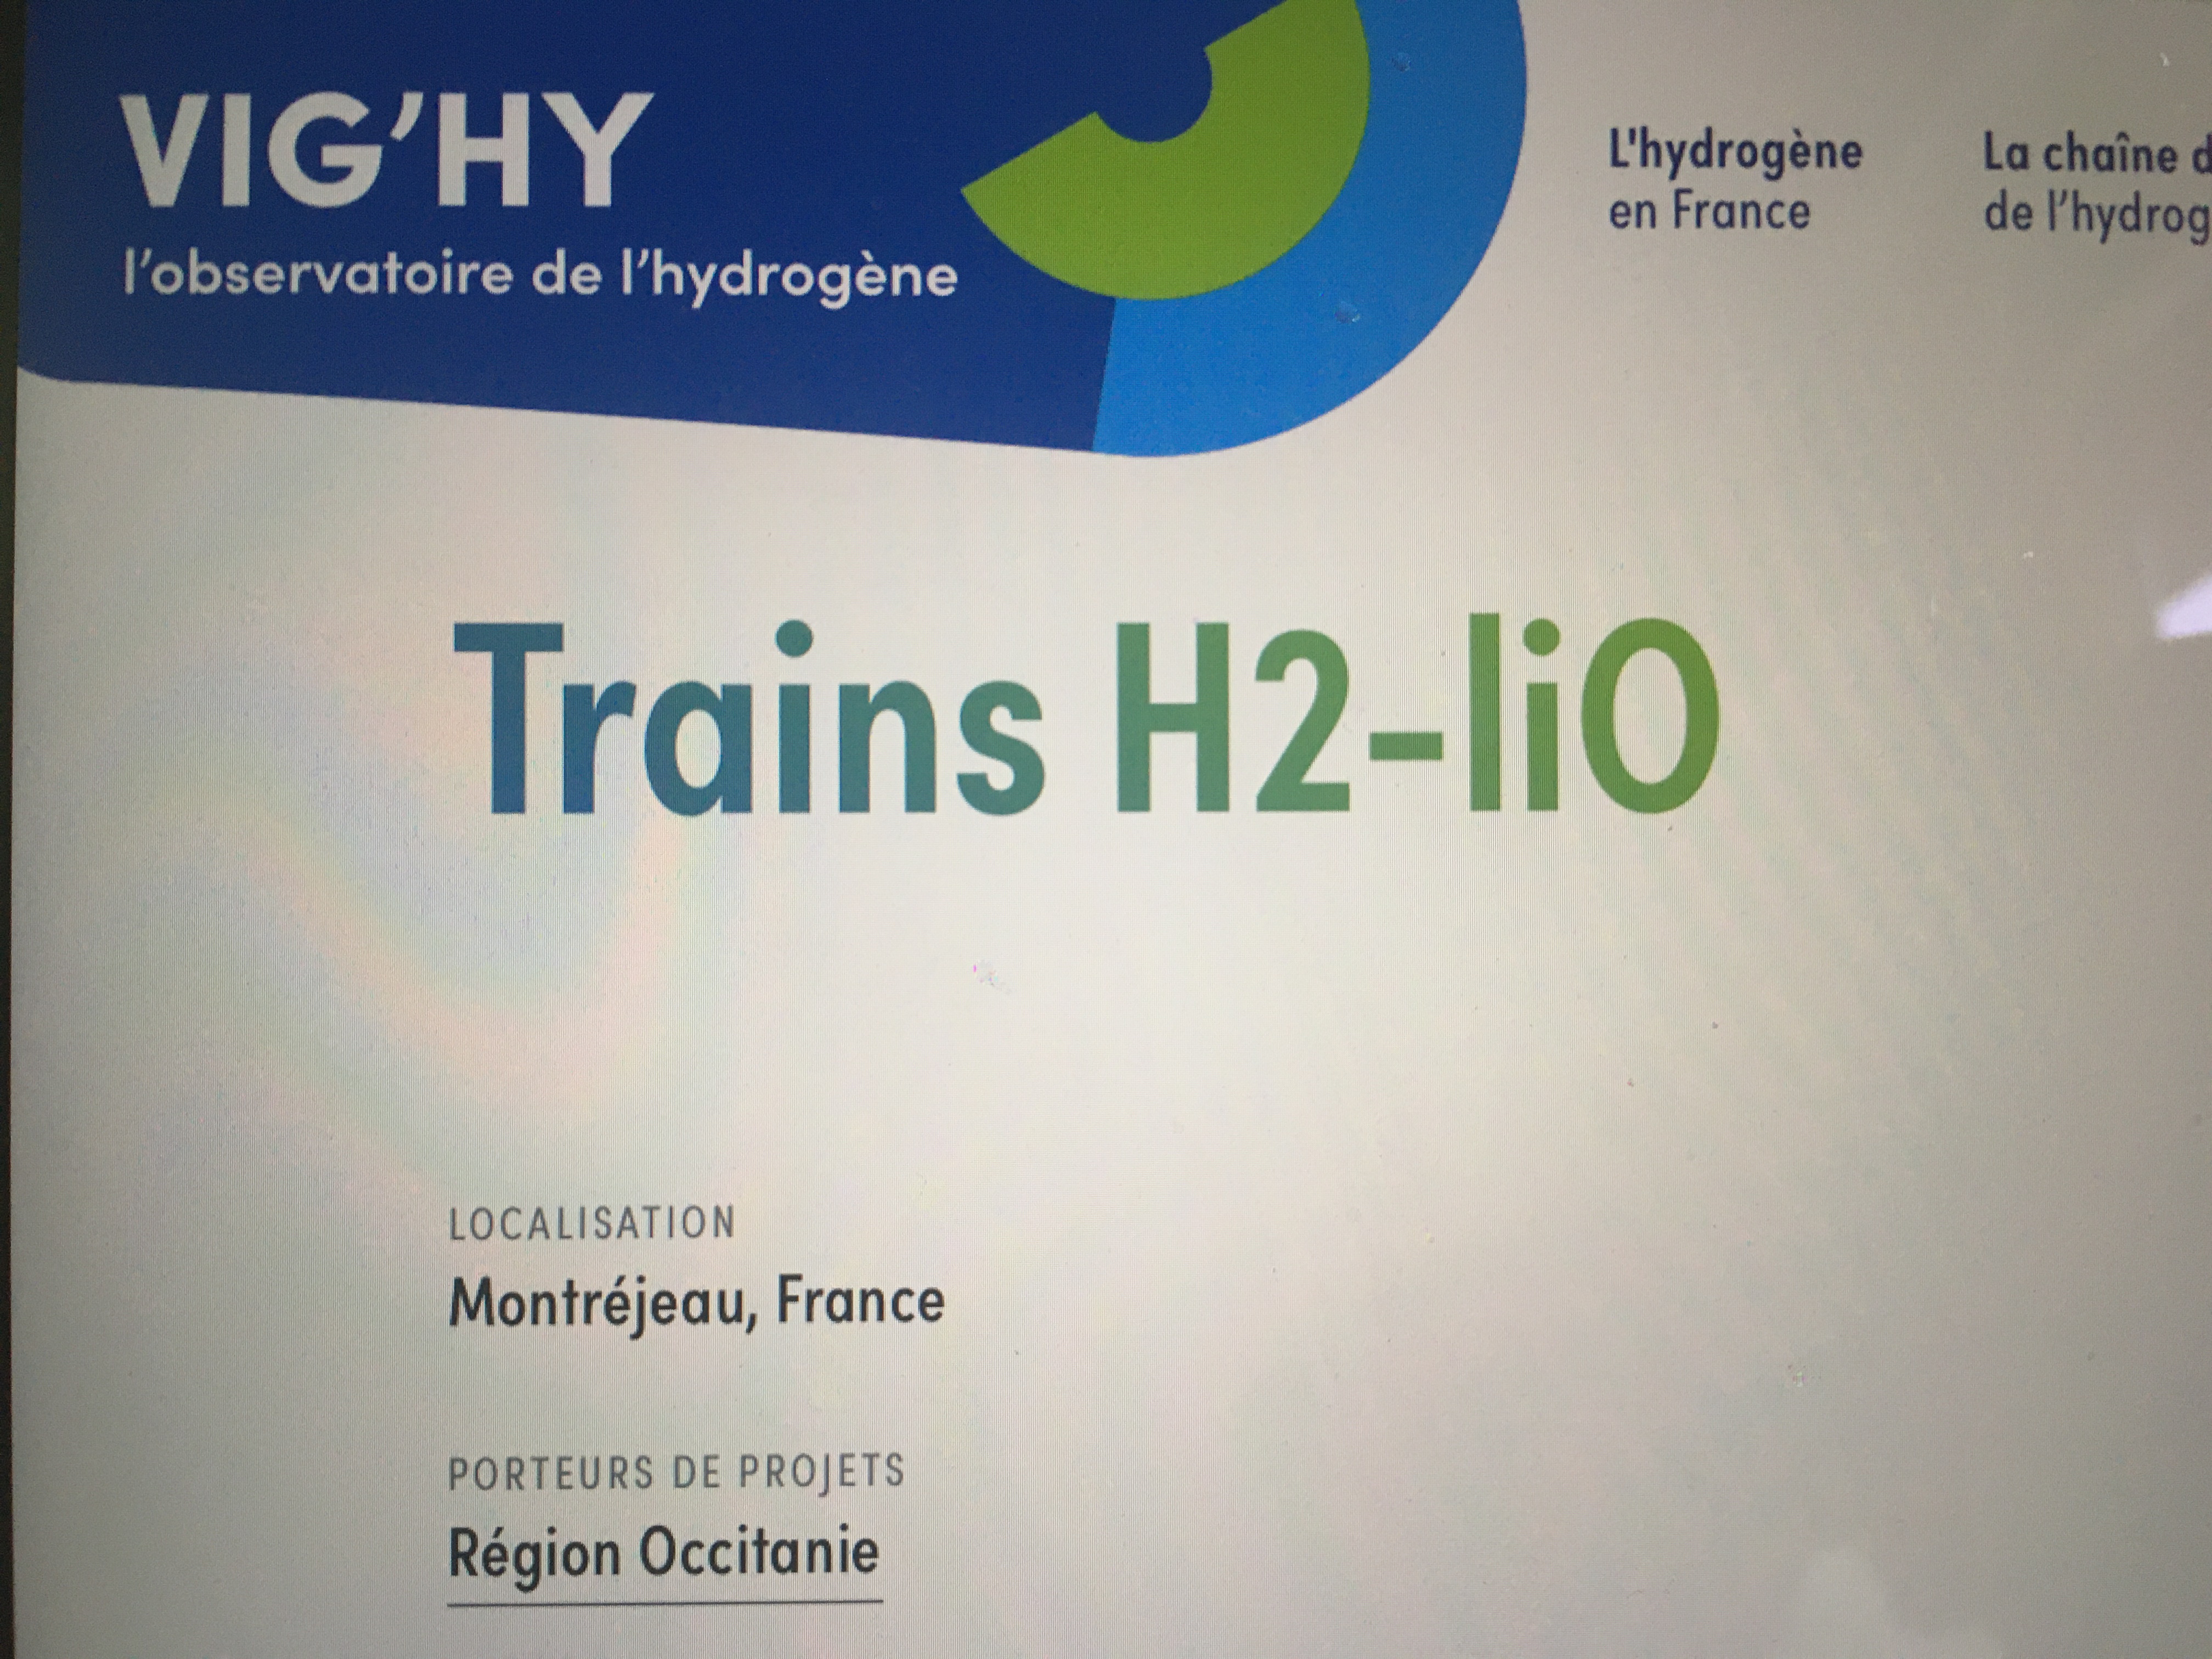 La future exploitation sur la ligne Montréjeau-Luchon du train Régiolis à hydrogène 